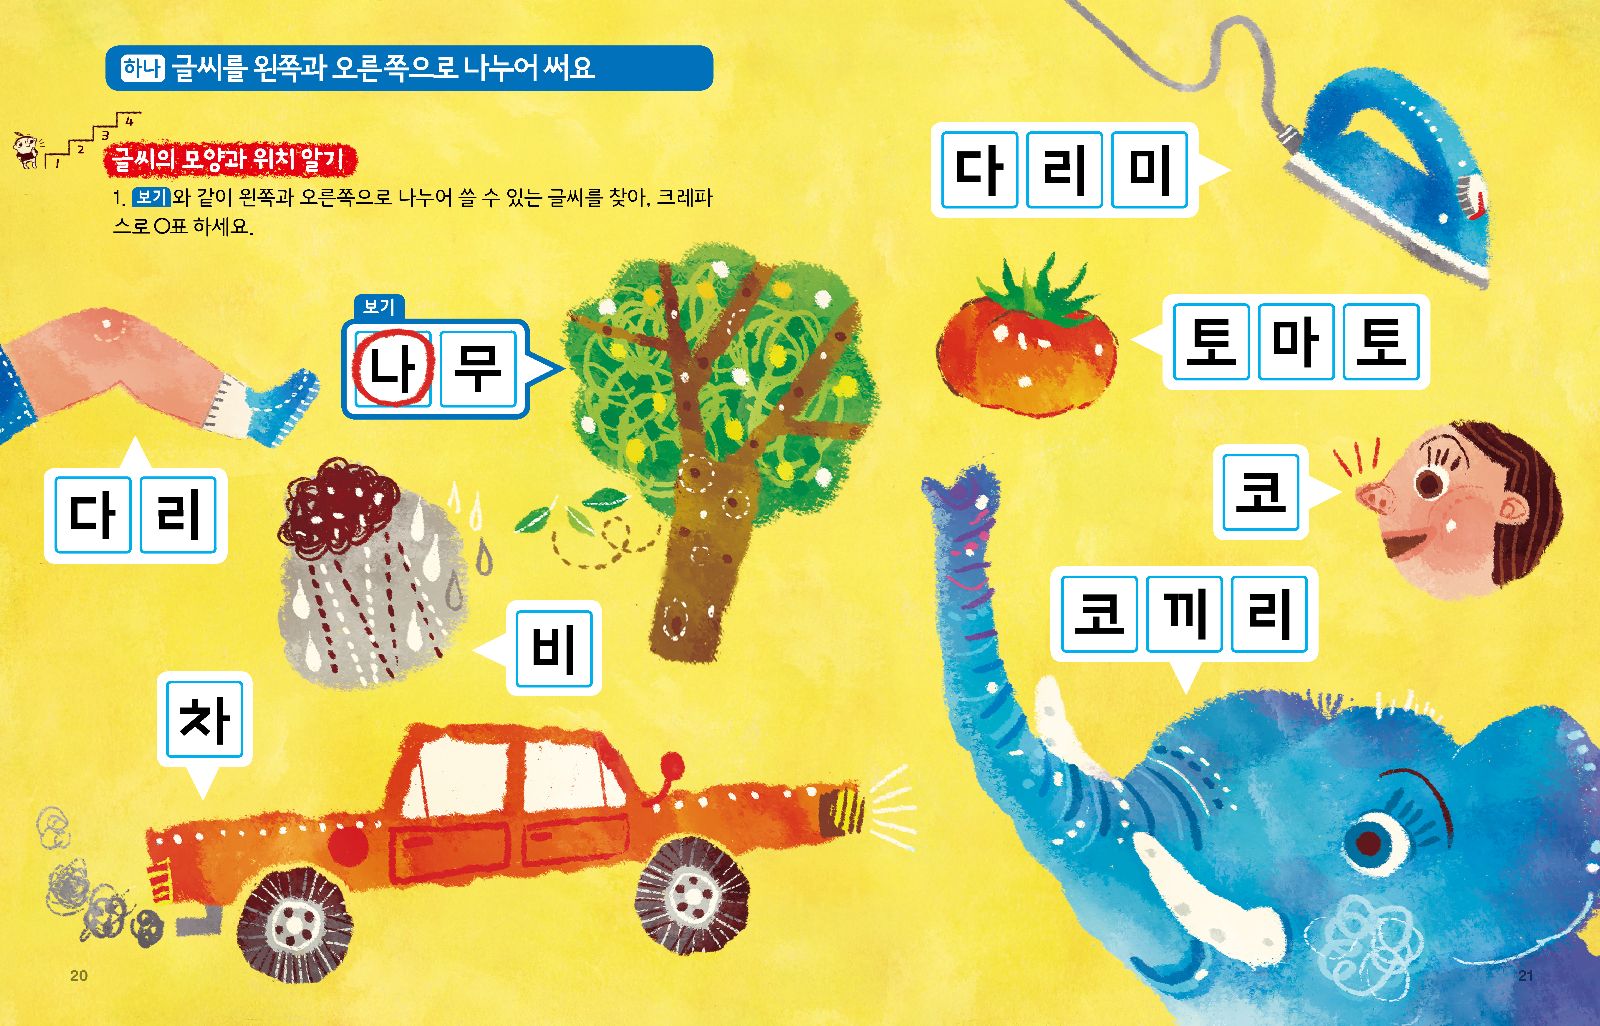 7 bí kíp học tiếng Hàn siêu nhanh cho người mới bắt đầu.